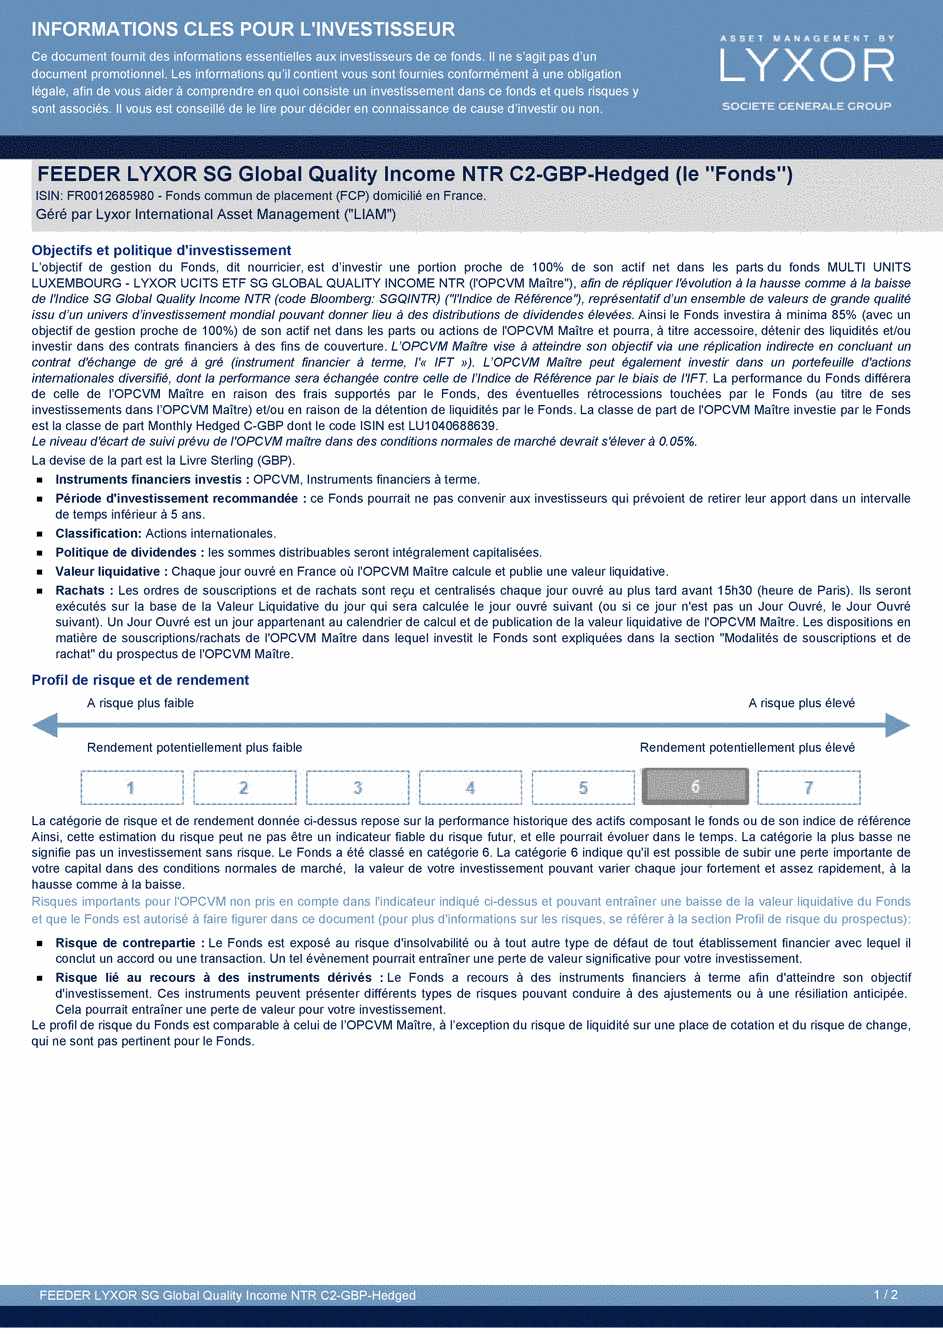 DICI FEEDER LYXOR SG GLOBAL QUALITY INCOME NTR C2-GBP-hedged - 24/04/2015 - Français